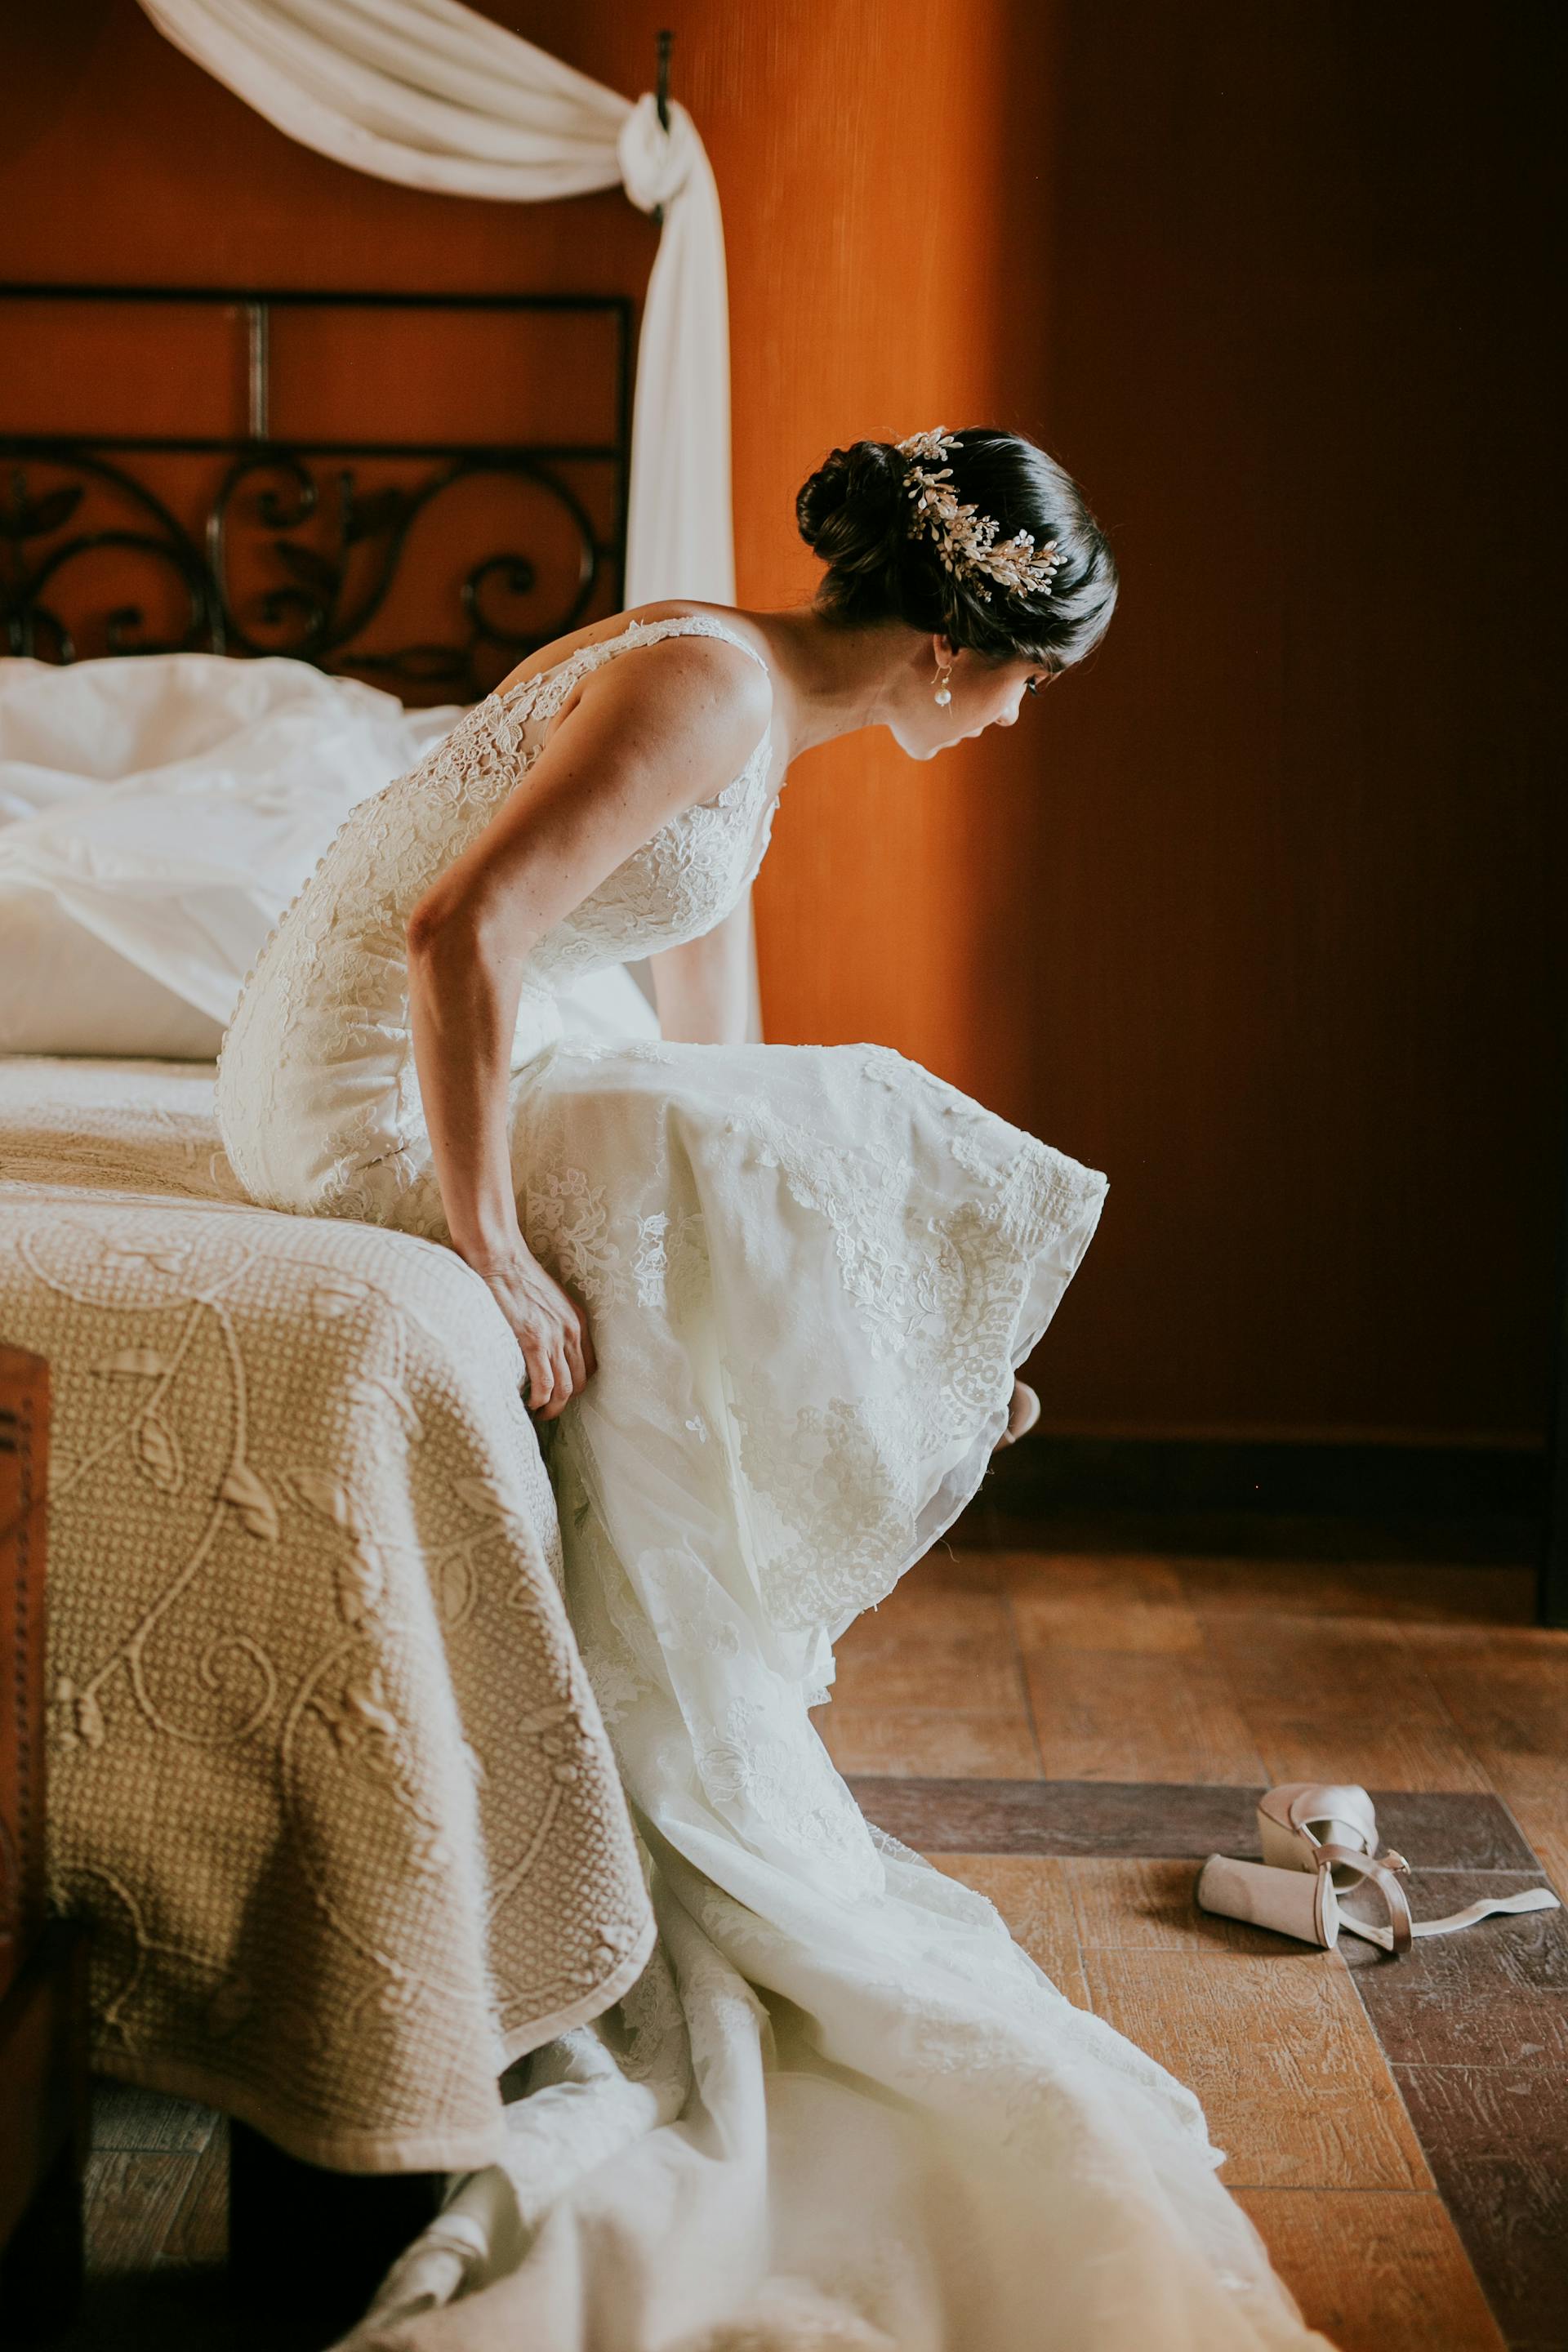 Eine Braut, die auf einem Bett sitzt | Quelle: Pexels